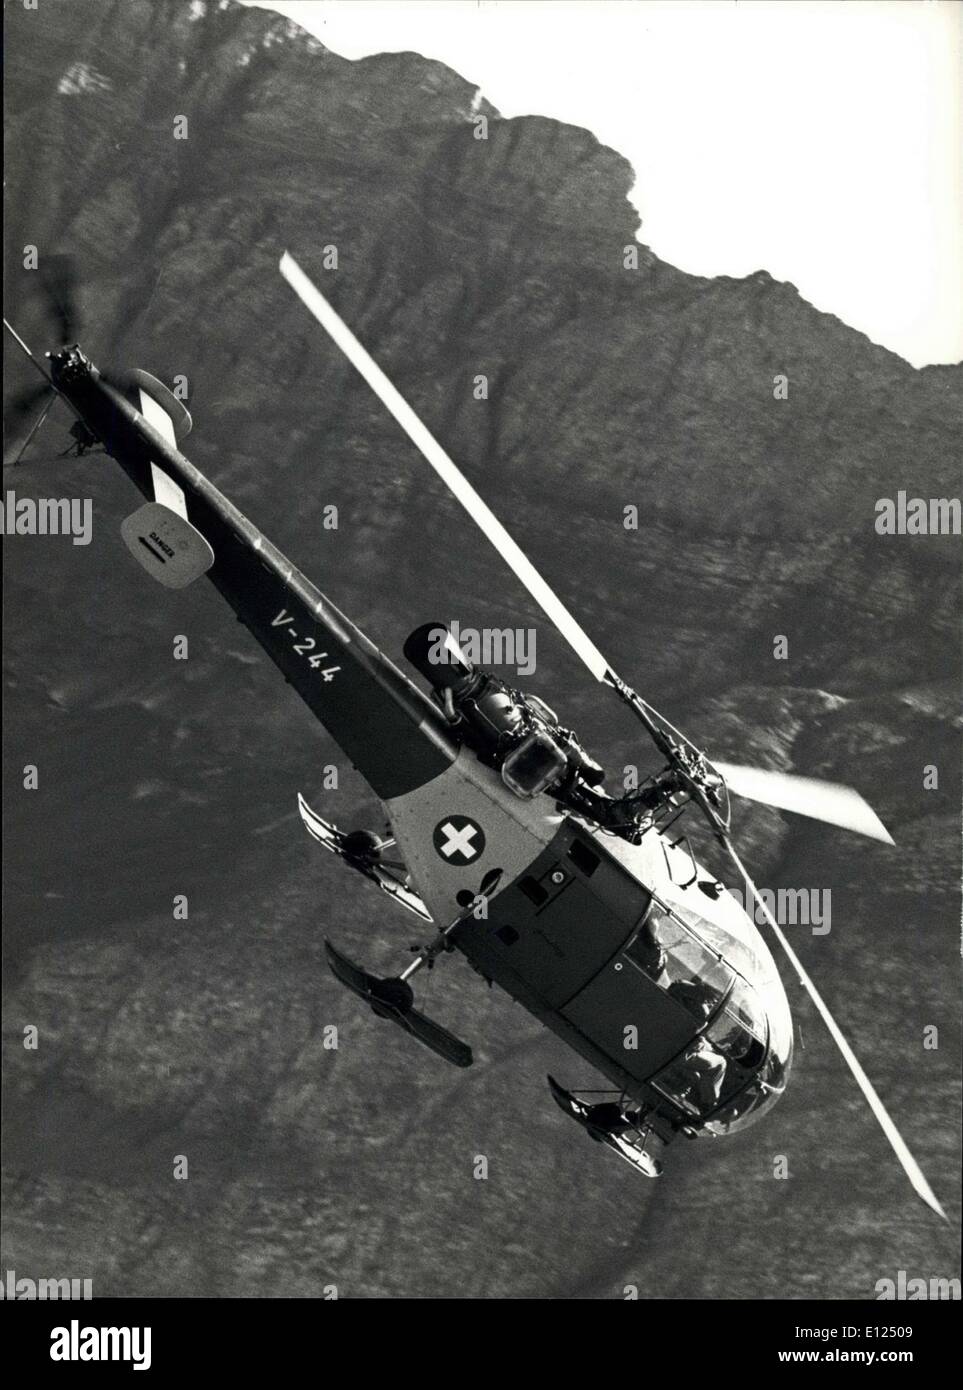 Octubre 04, 1986 - Airforce-Training Suizo en los Alpes: varias veces al año Airfore-Pilots suizo tiene la posibilidad en la formación Foto de stock